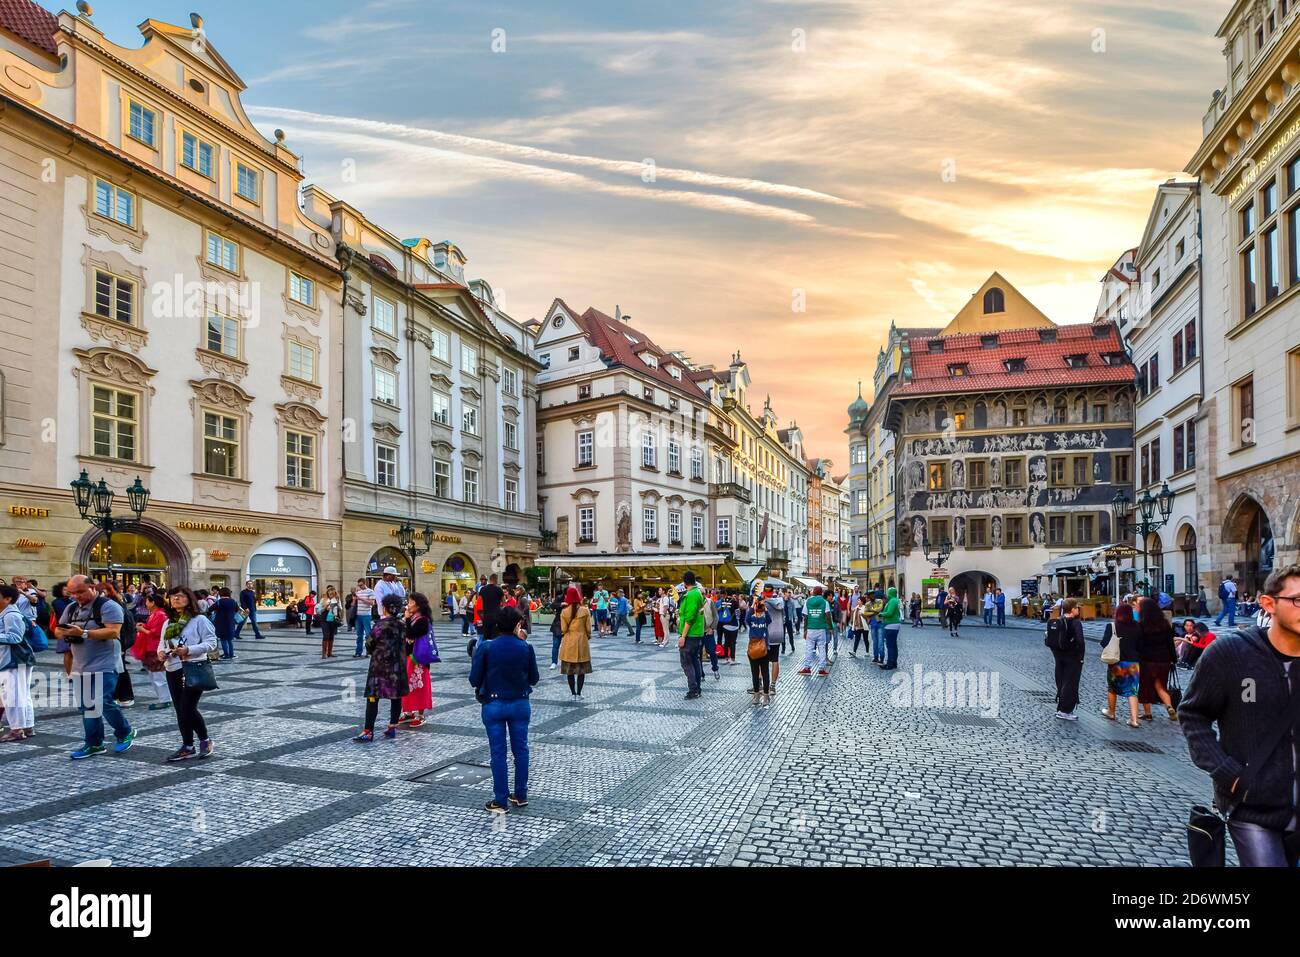 Touristen drängen den malerischen Altstädter Ring, während sie die vielen Geschäfte und Cafés im historischen Zentrum von Prag, Tschechien genießen Stockfoto